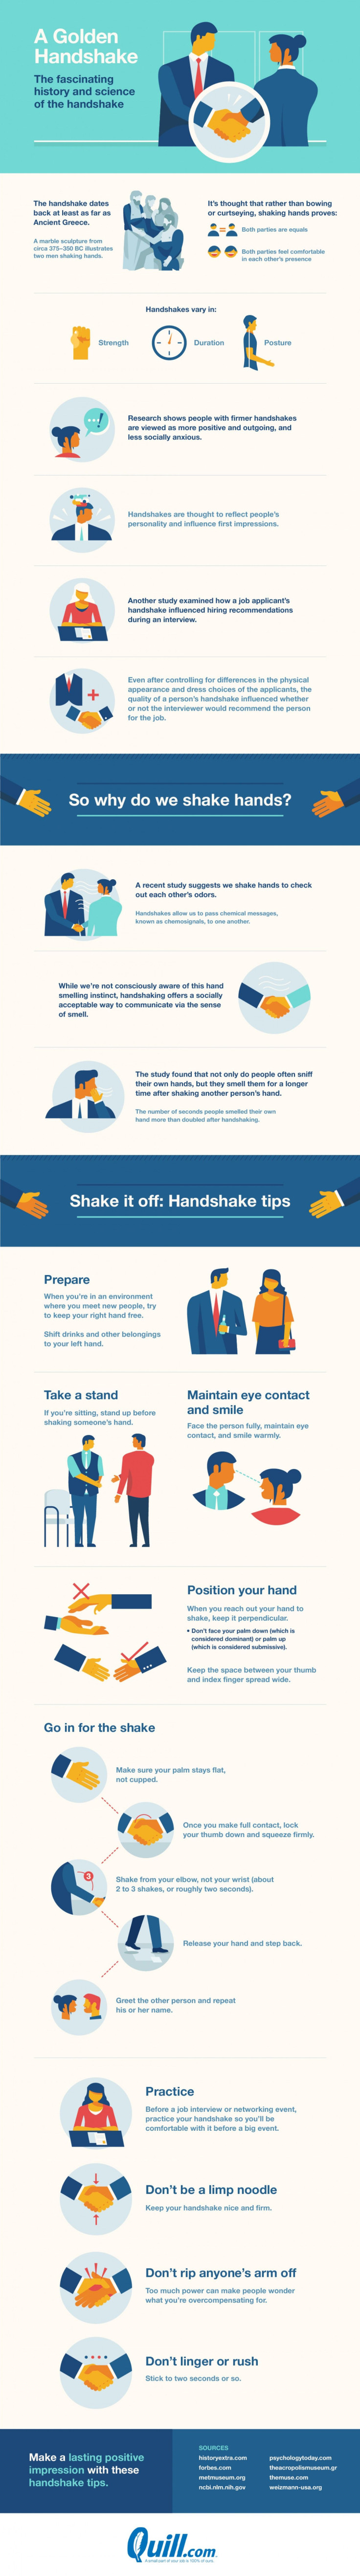 handshake infographic